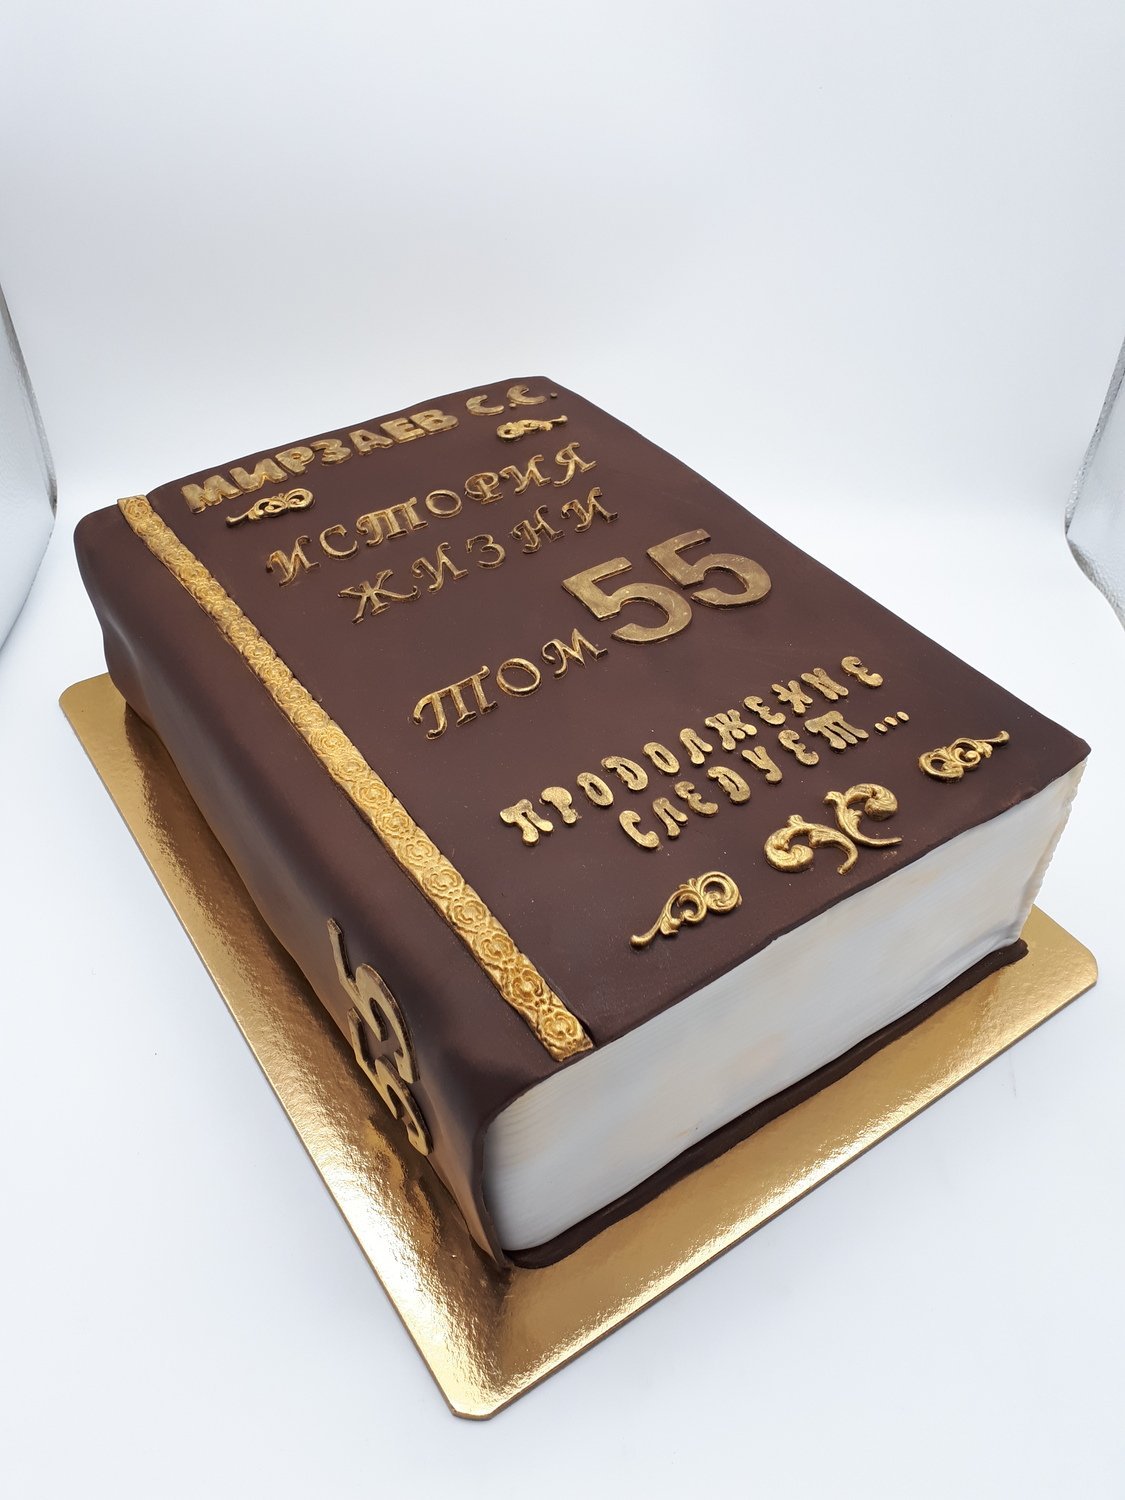 Надписи на торте 55 лет. Торт на юбилей мужчине. Торт книга. Торт книжка на юбилей. Торттна юбилей мужчине.